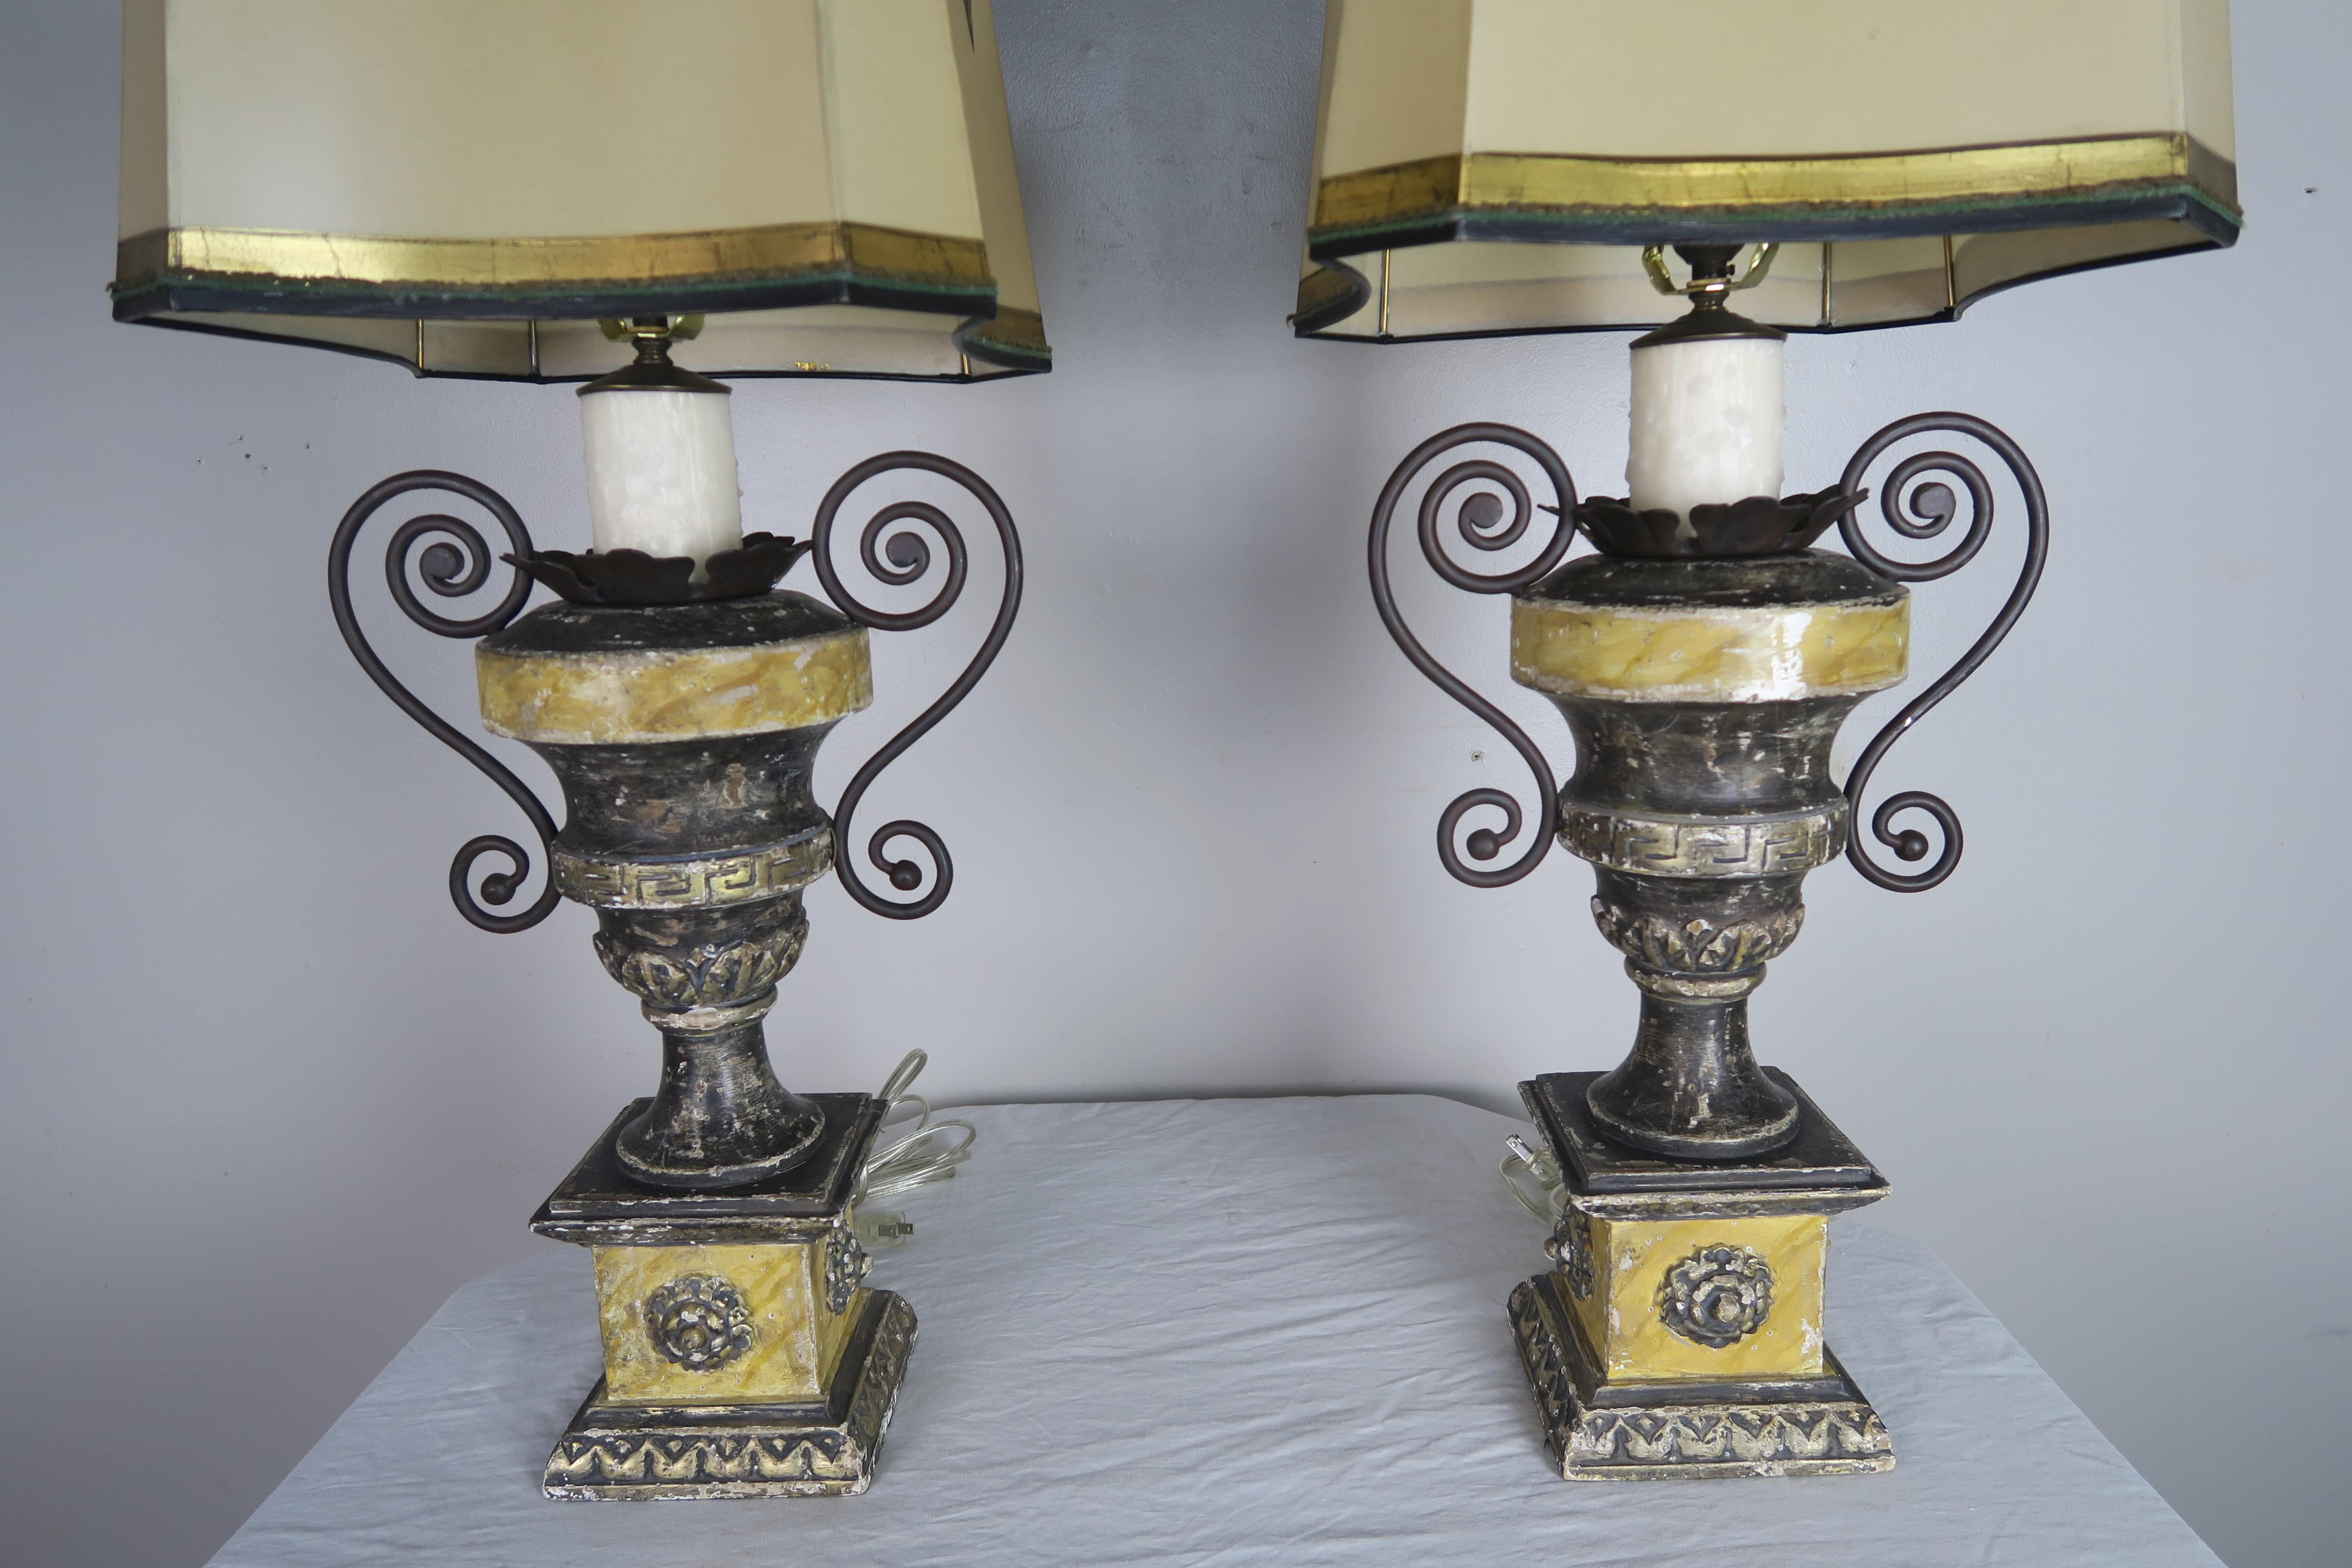 Paire d'urnes de style néoclassique sculptées et peintes, avec rehauts d'argent doré et motif de clé grecque. Les lampes sont nouvellement rebranchées avec des caches-bougies en cire. Les lampes sont couronnées d'abat-jour rectangulaires peints à la